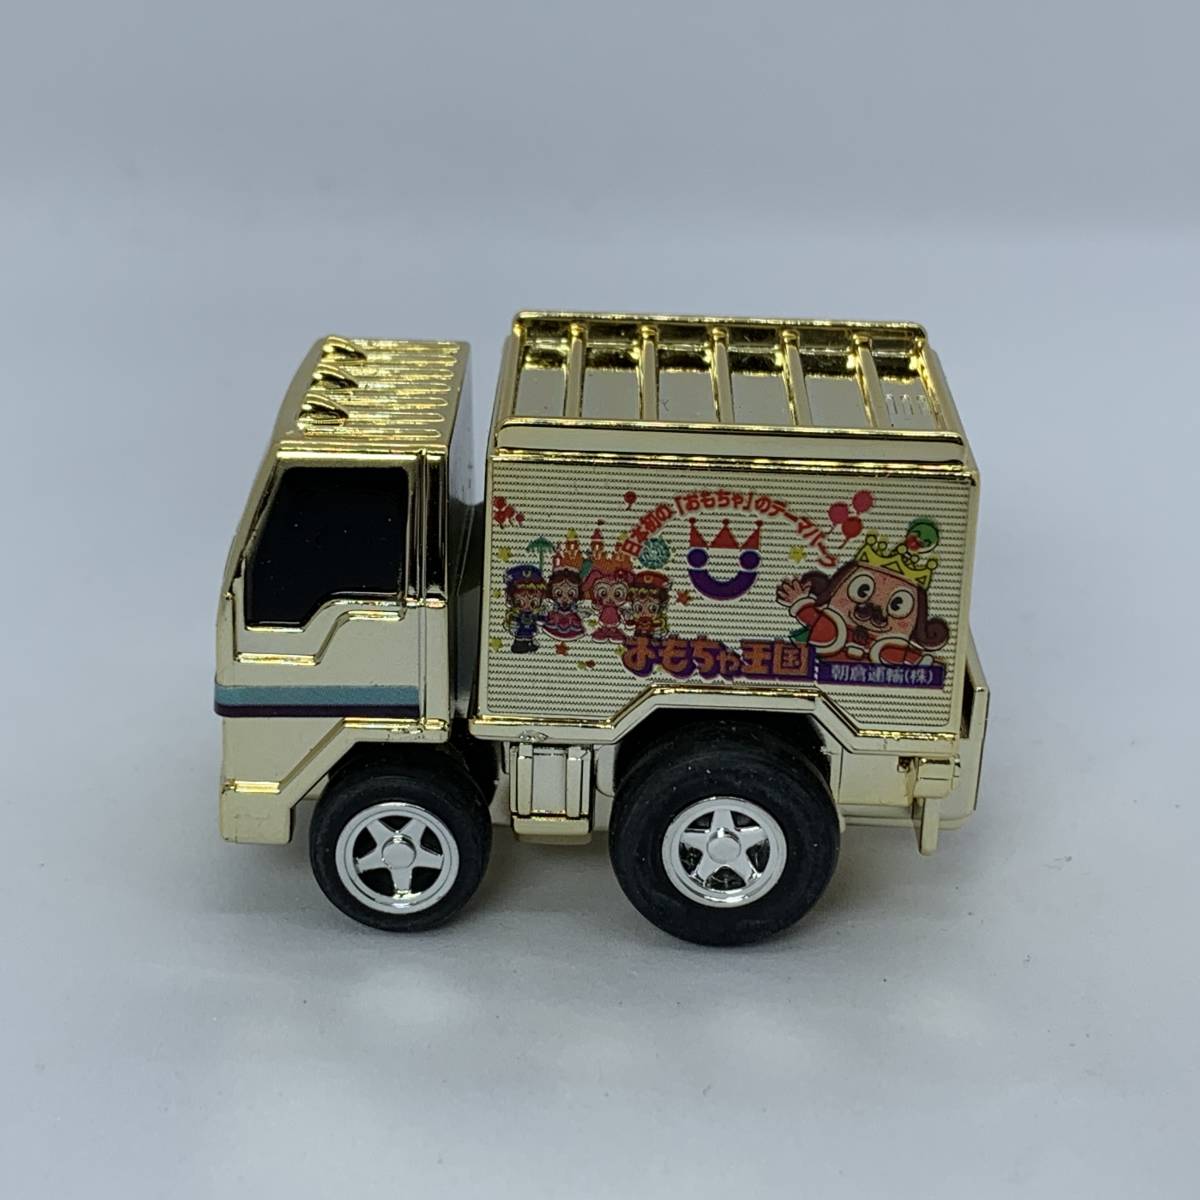  Choro Q игрушка королевство грузовик позолоченный (Q02365